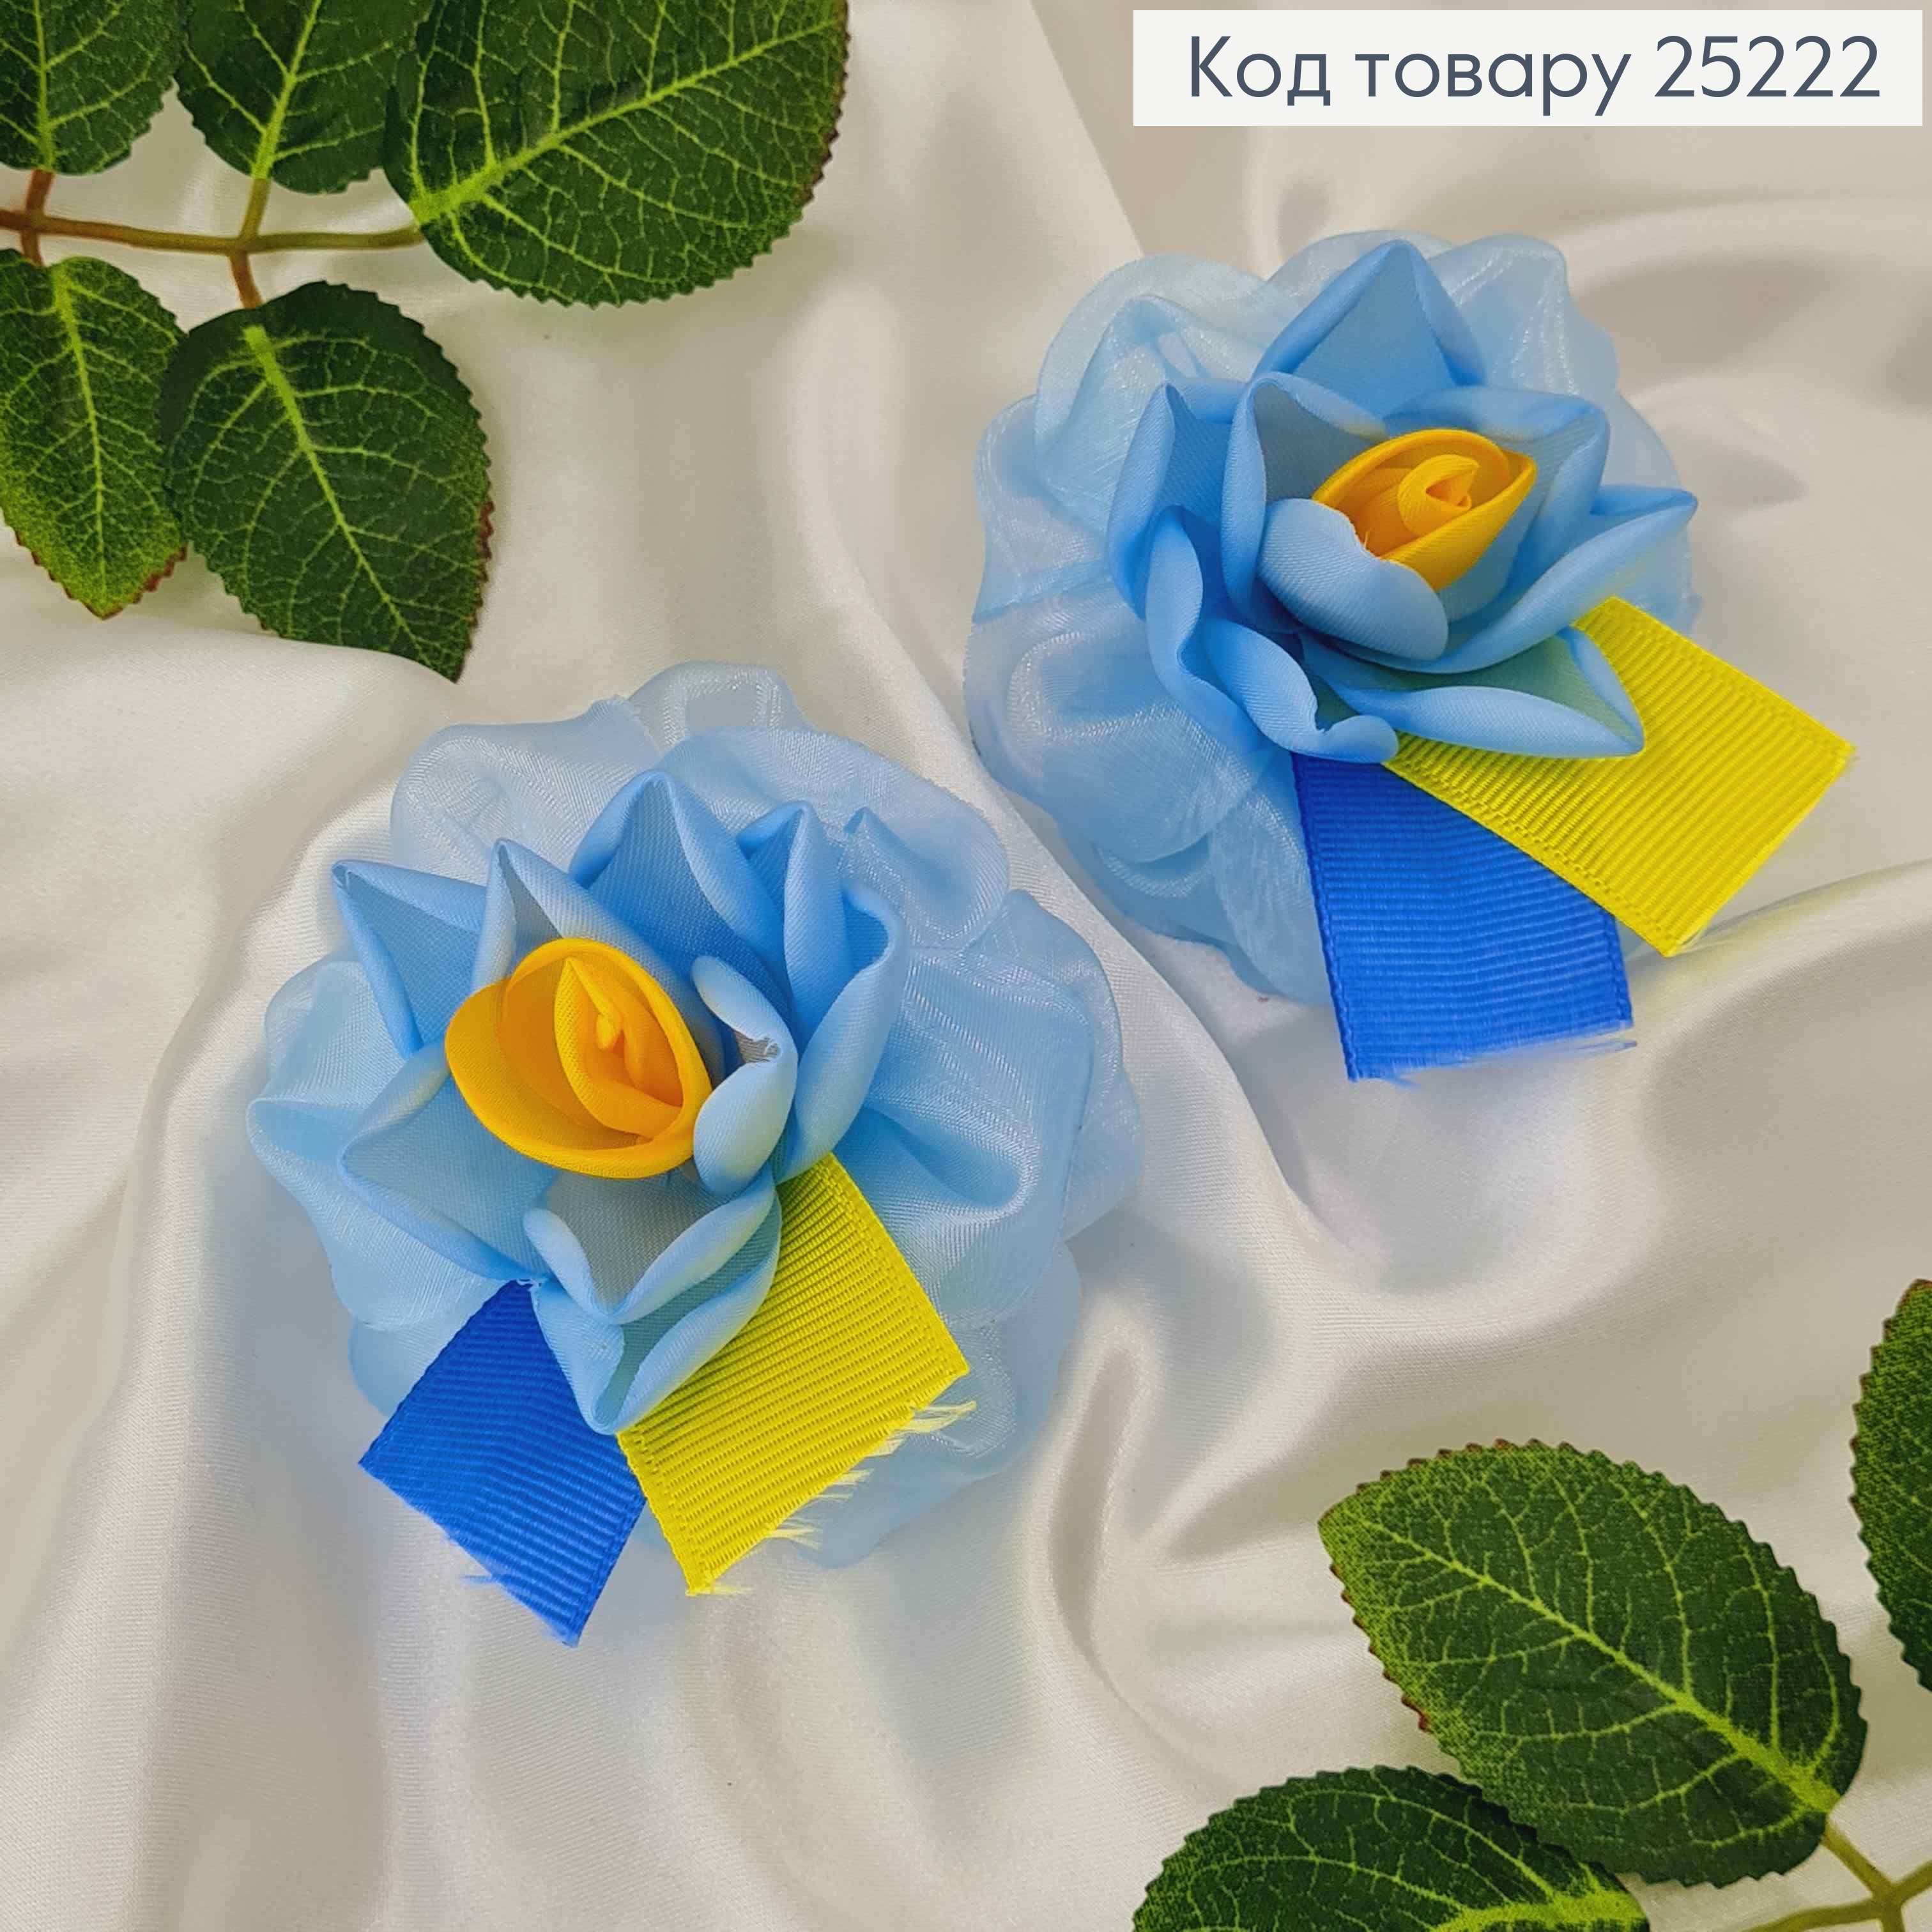 Бант на резинке, фатиновый, голубого цвета с сине-желтой репсовой лентой, 7,5см УКРАИНА 25222 фото 2